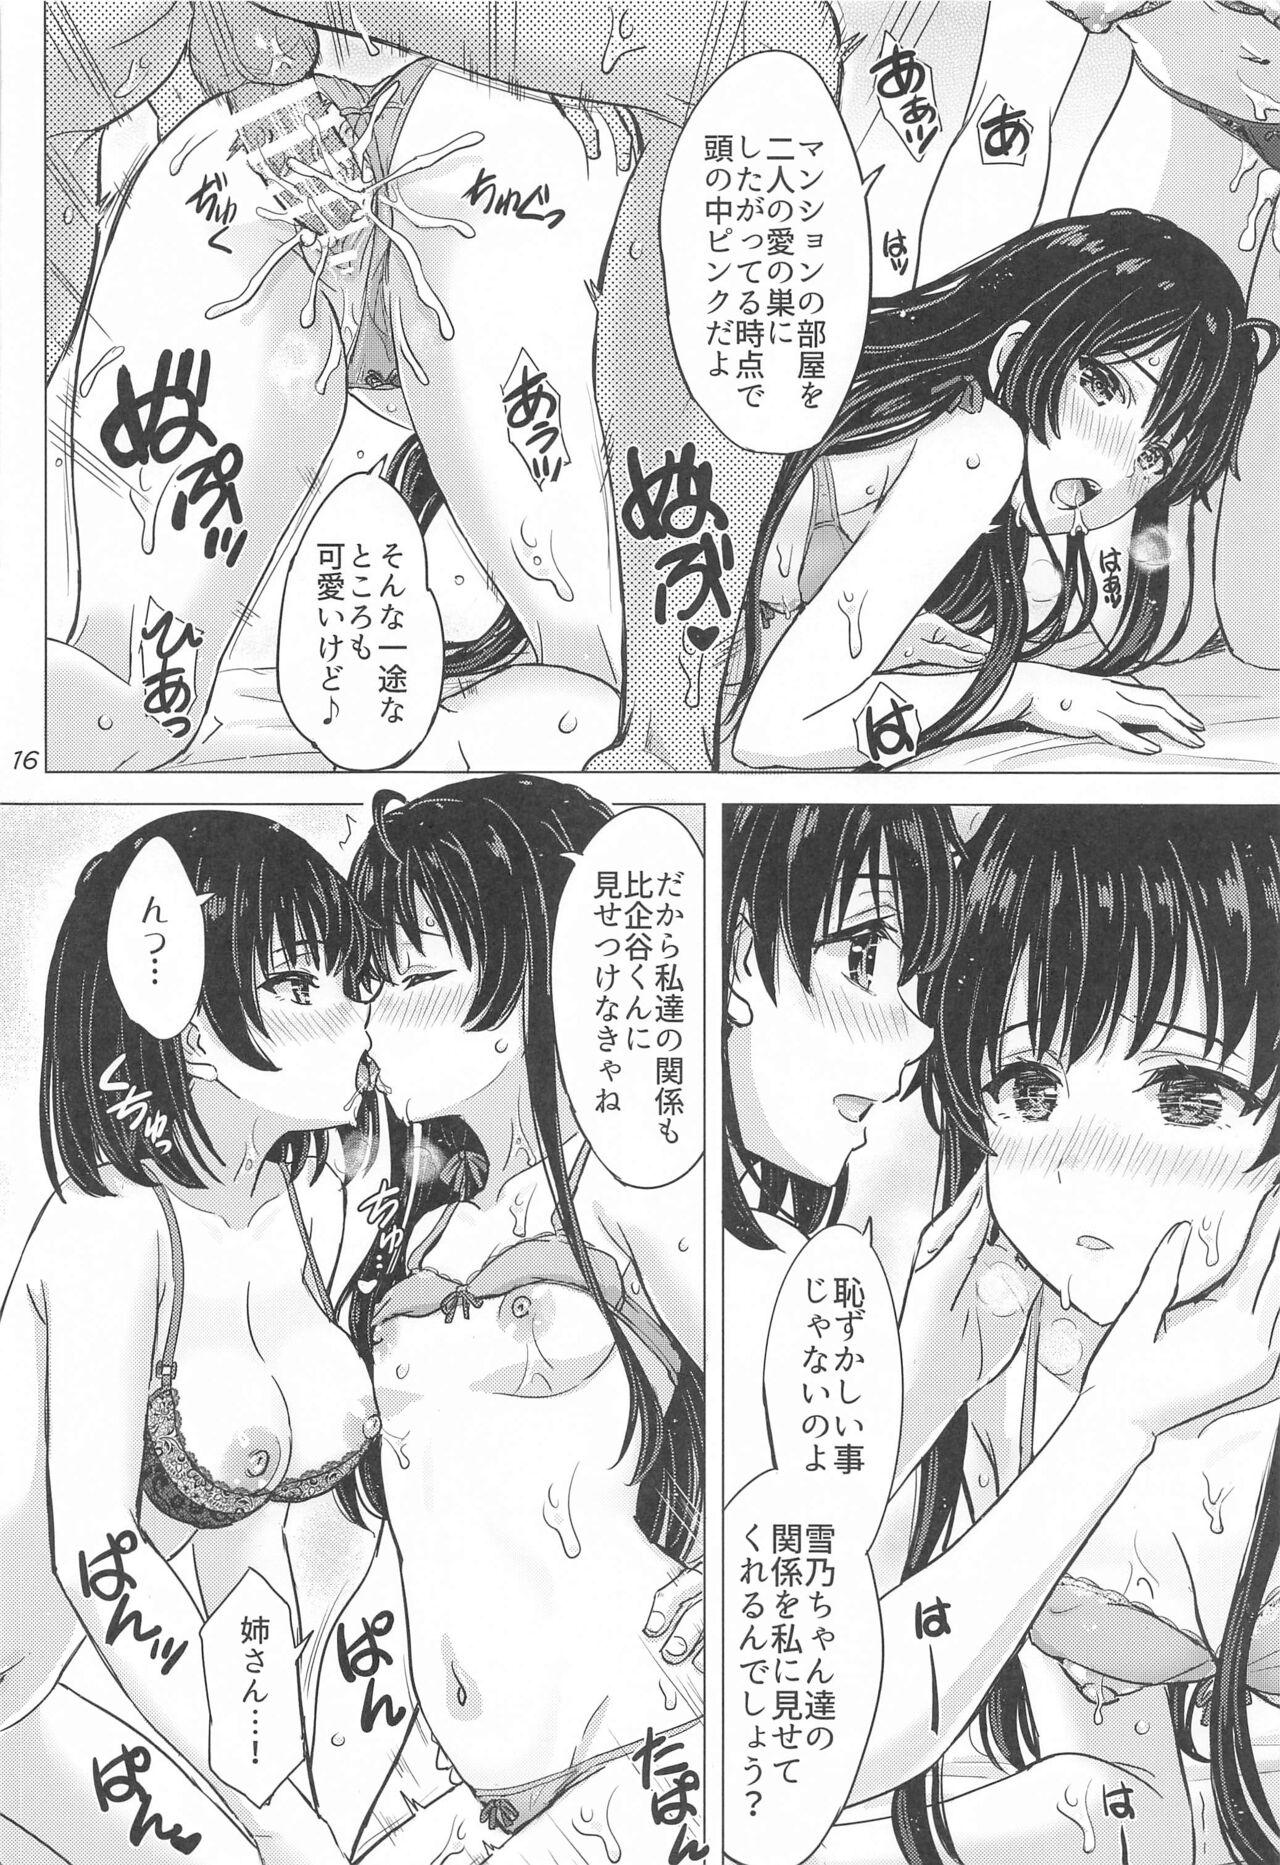 Miwakuteki ni Yukinoshita Shimai  ga Rouraku Shite Kuru. - The Yukinoshita sisters continue to have sex with hachiman. 14